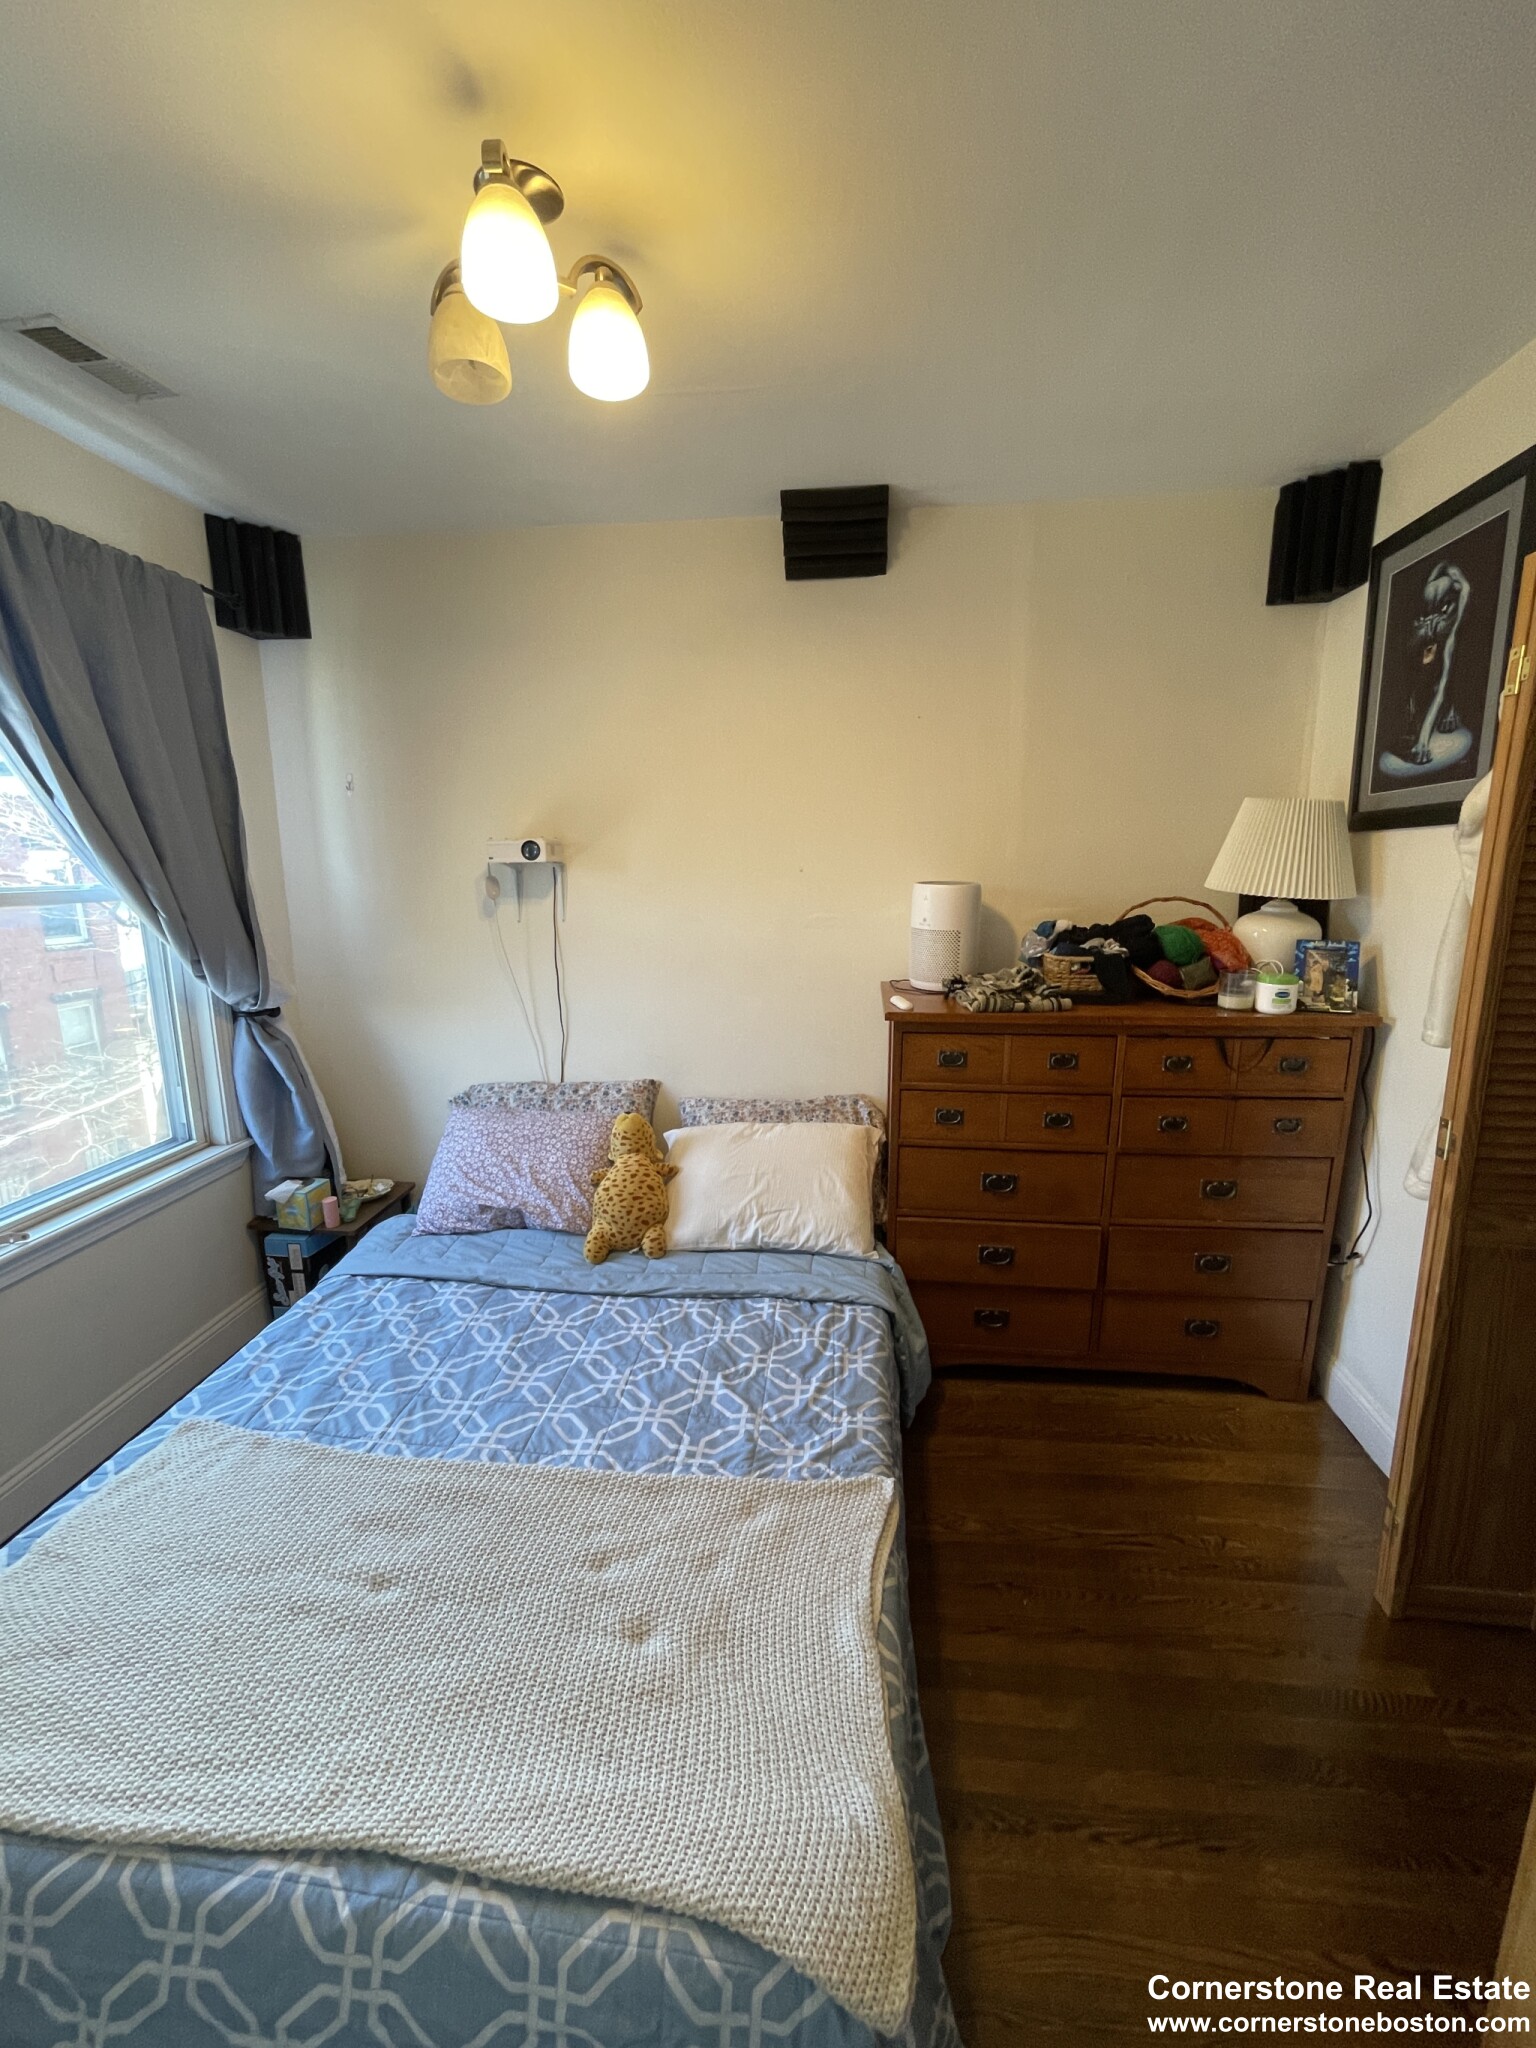 Photos of apartment on Chesterton,Boston MA 02119